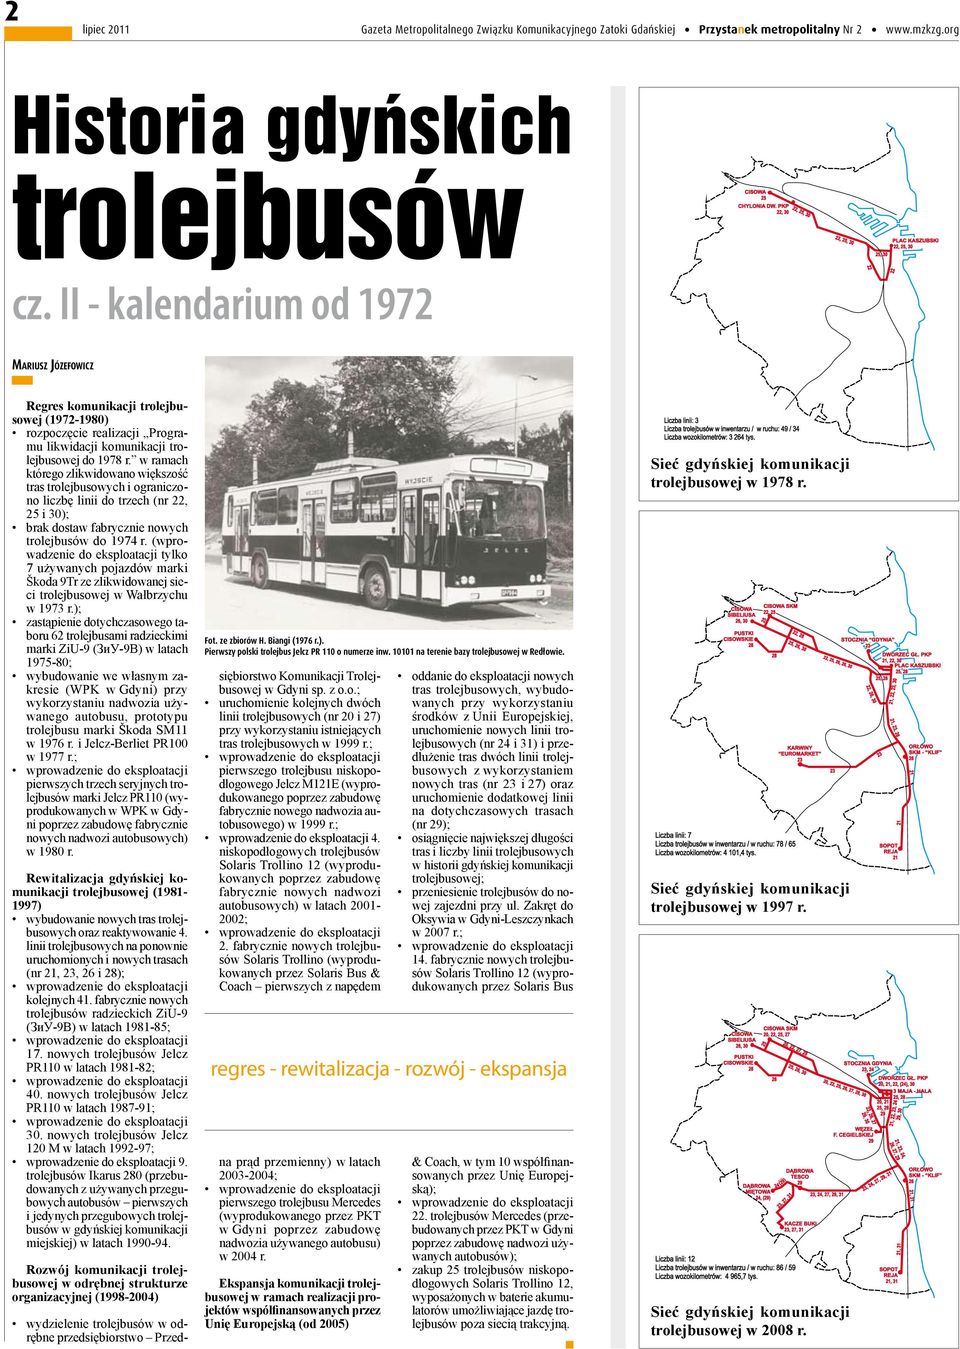 w ramach którego zlikwidowano większość tras trolejbusowych i ograniczono liczbę linii do trzech (nr 22, 25 i 30); brak dostaw fabrycznie nowych trolejbusów do 1974 r.